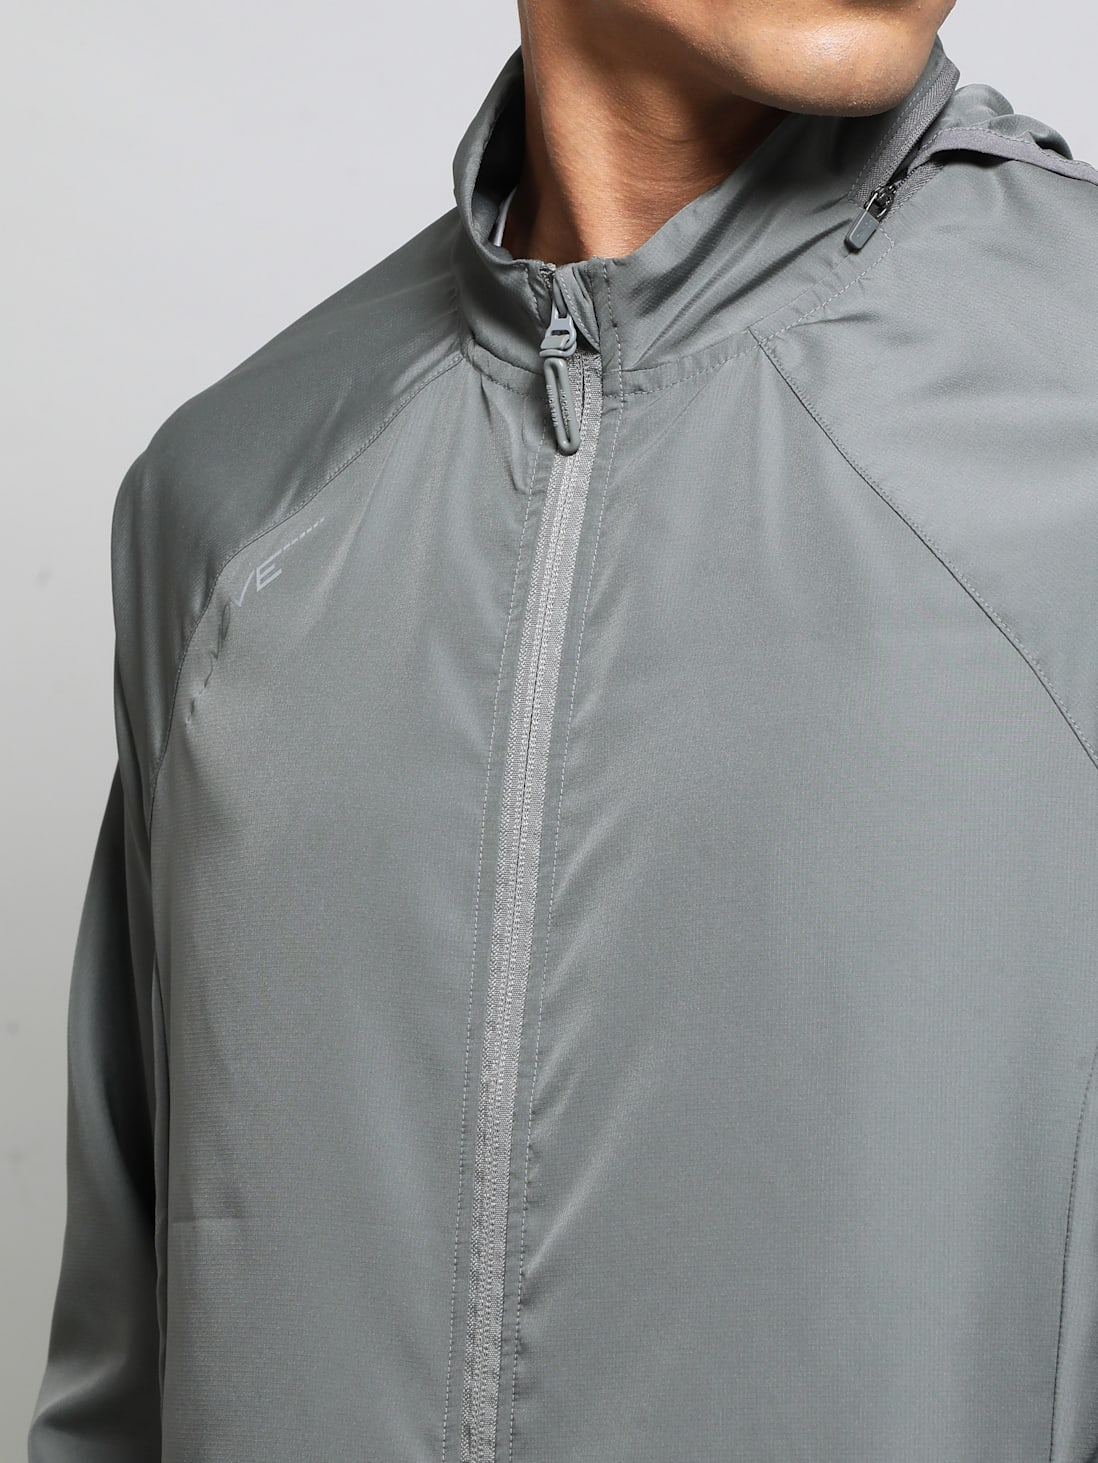 Buy Men's Microfiber Fabric Water Resistant Convertible Hoodie Jacket ...